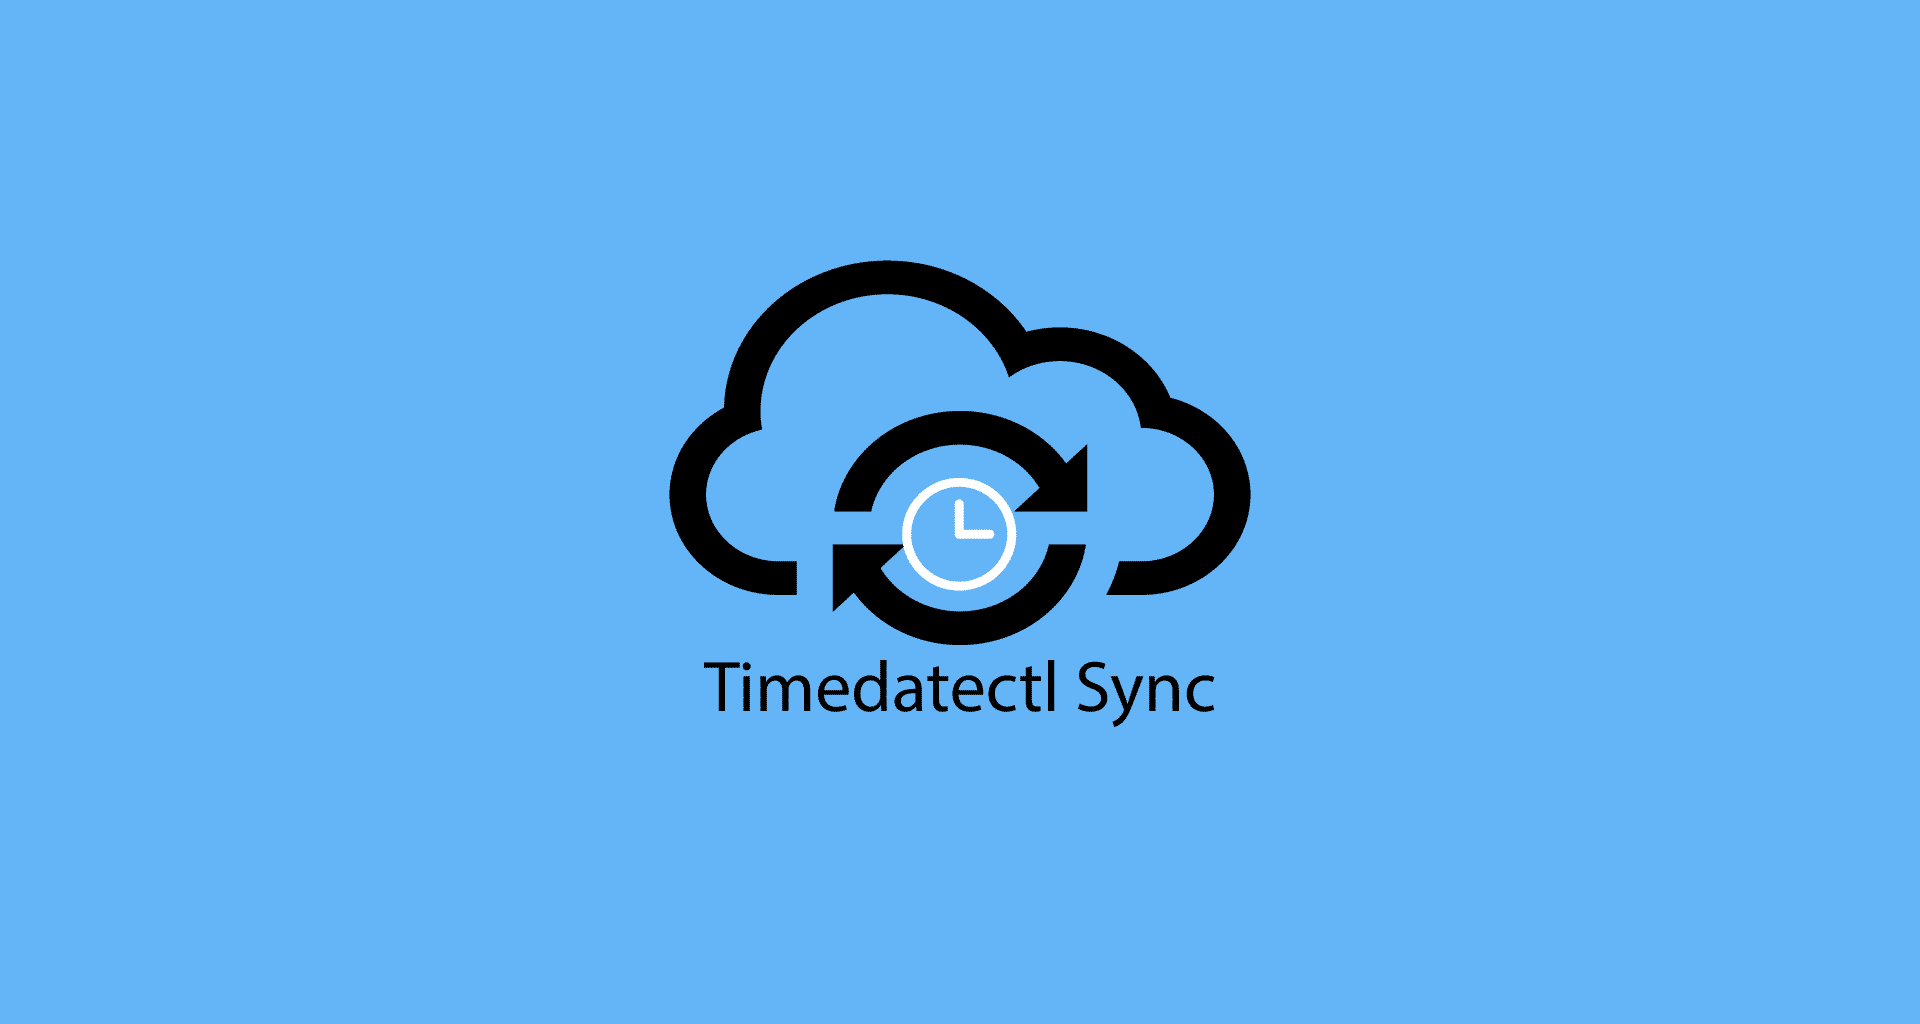 timedatectl logo tasarım görseli